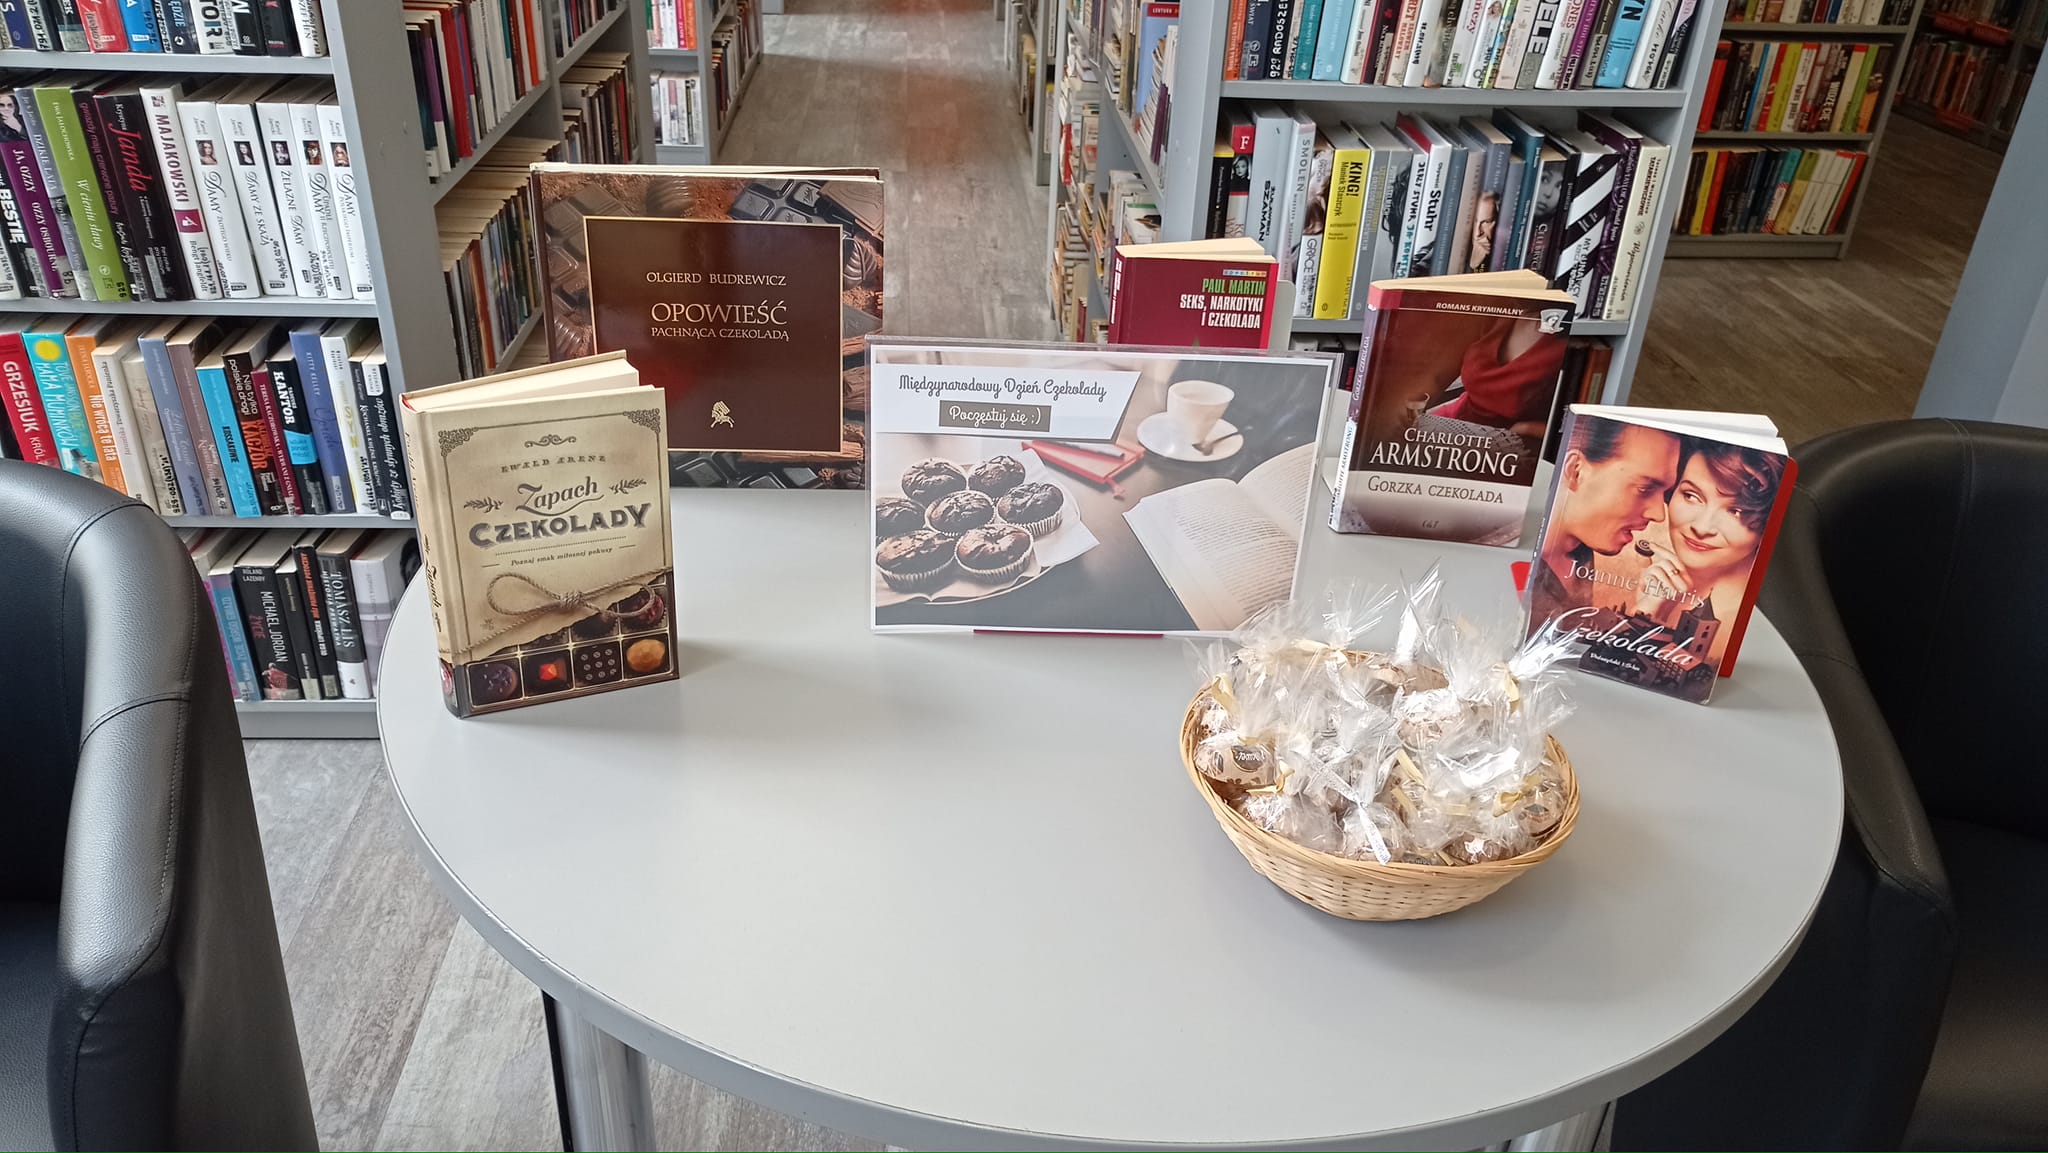 na stole leży koszyk z czekoladkami, obok stoją książki o tematyce czekolady lub z tytułem zawierającym czekoladę